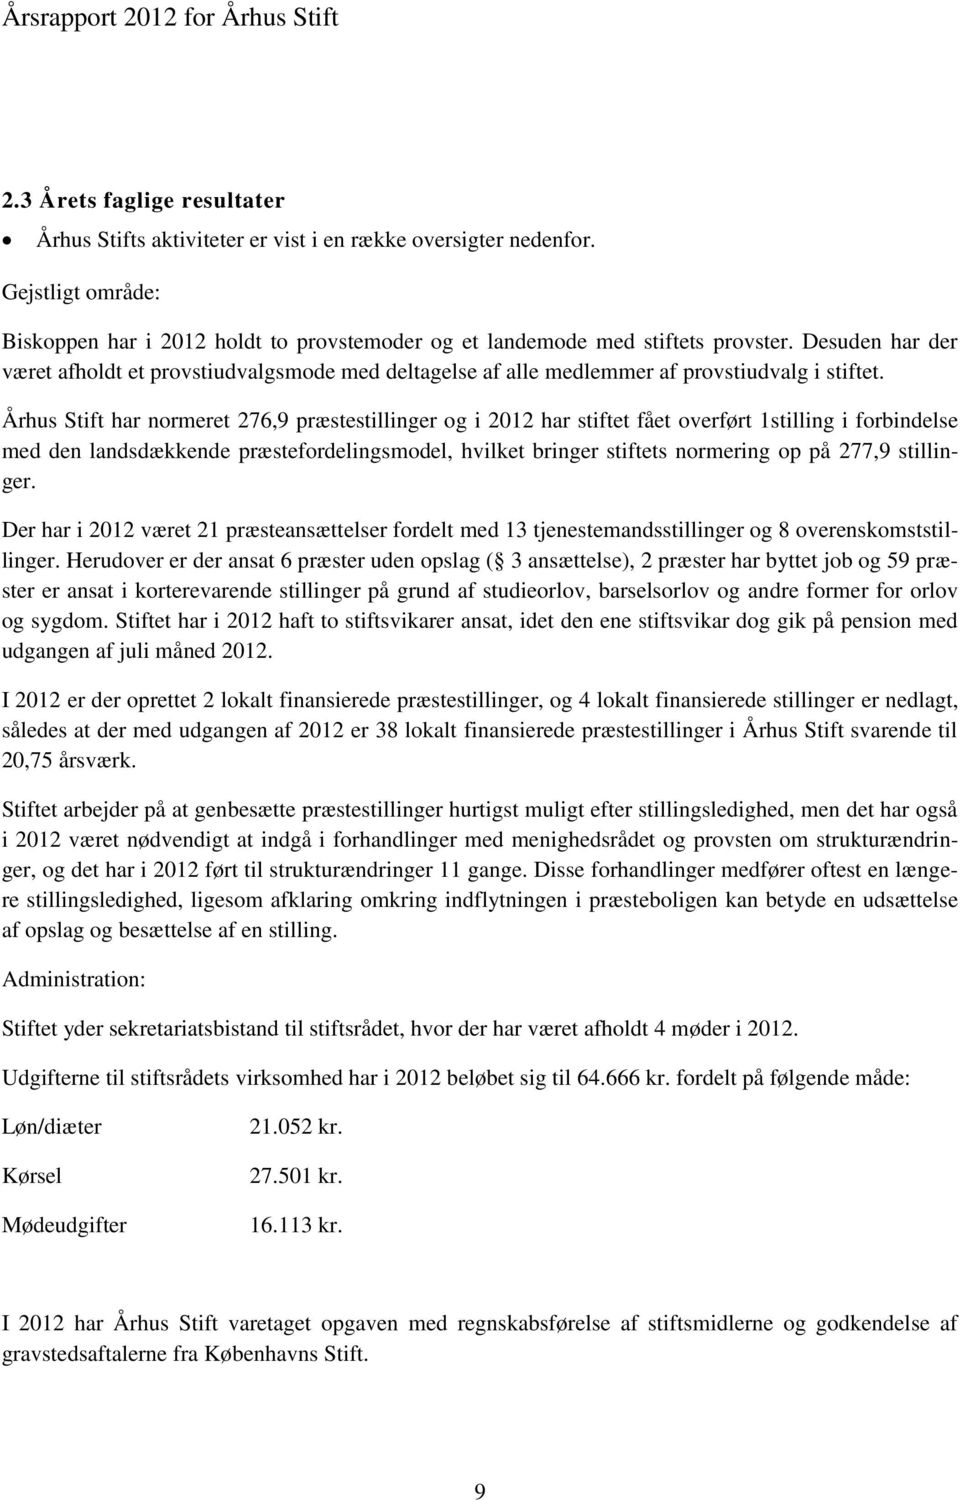 Århus Stift har normeret 276,9 præstestillinger og i 2012 har stiftet fået overført 1stilling i forbindelse med den landsdækkende præstefordelingsmodel, hvilket bringer stiftets normering op på 277,9